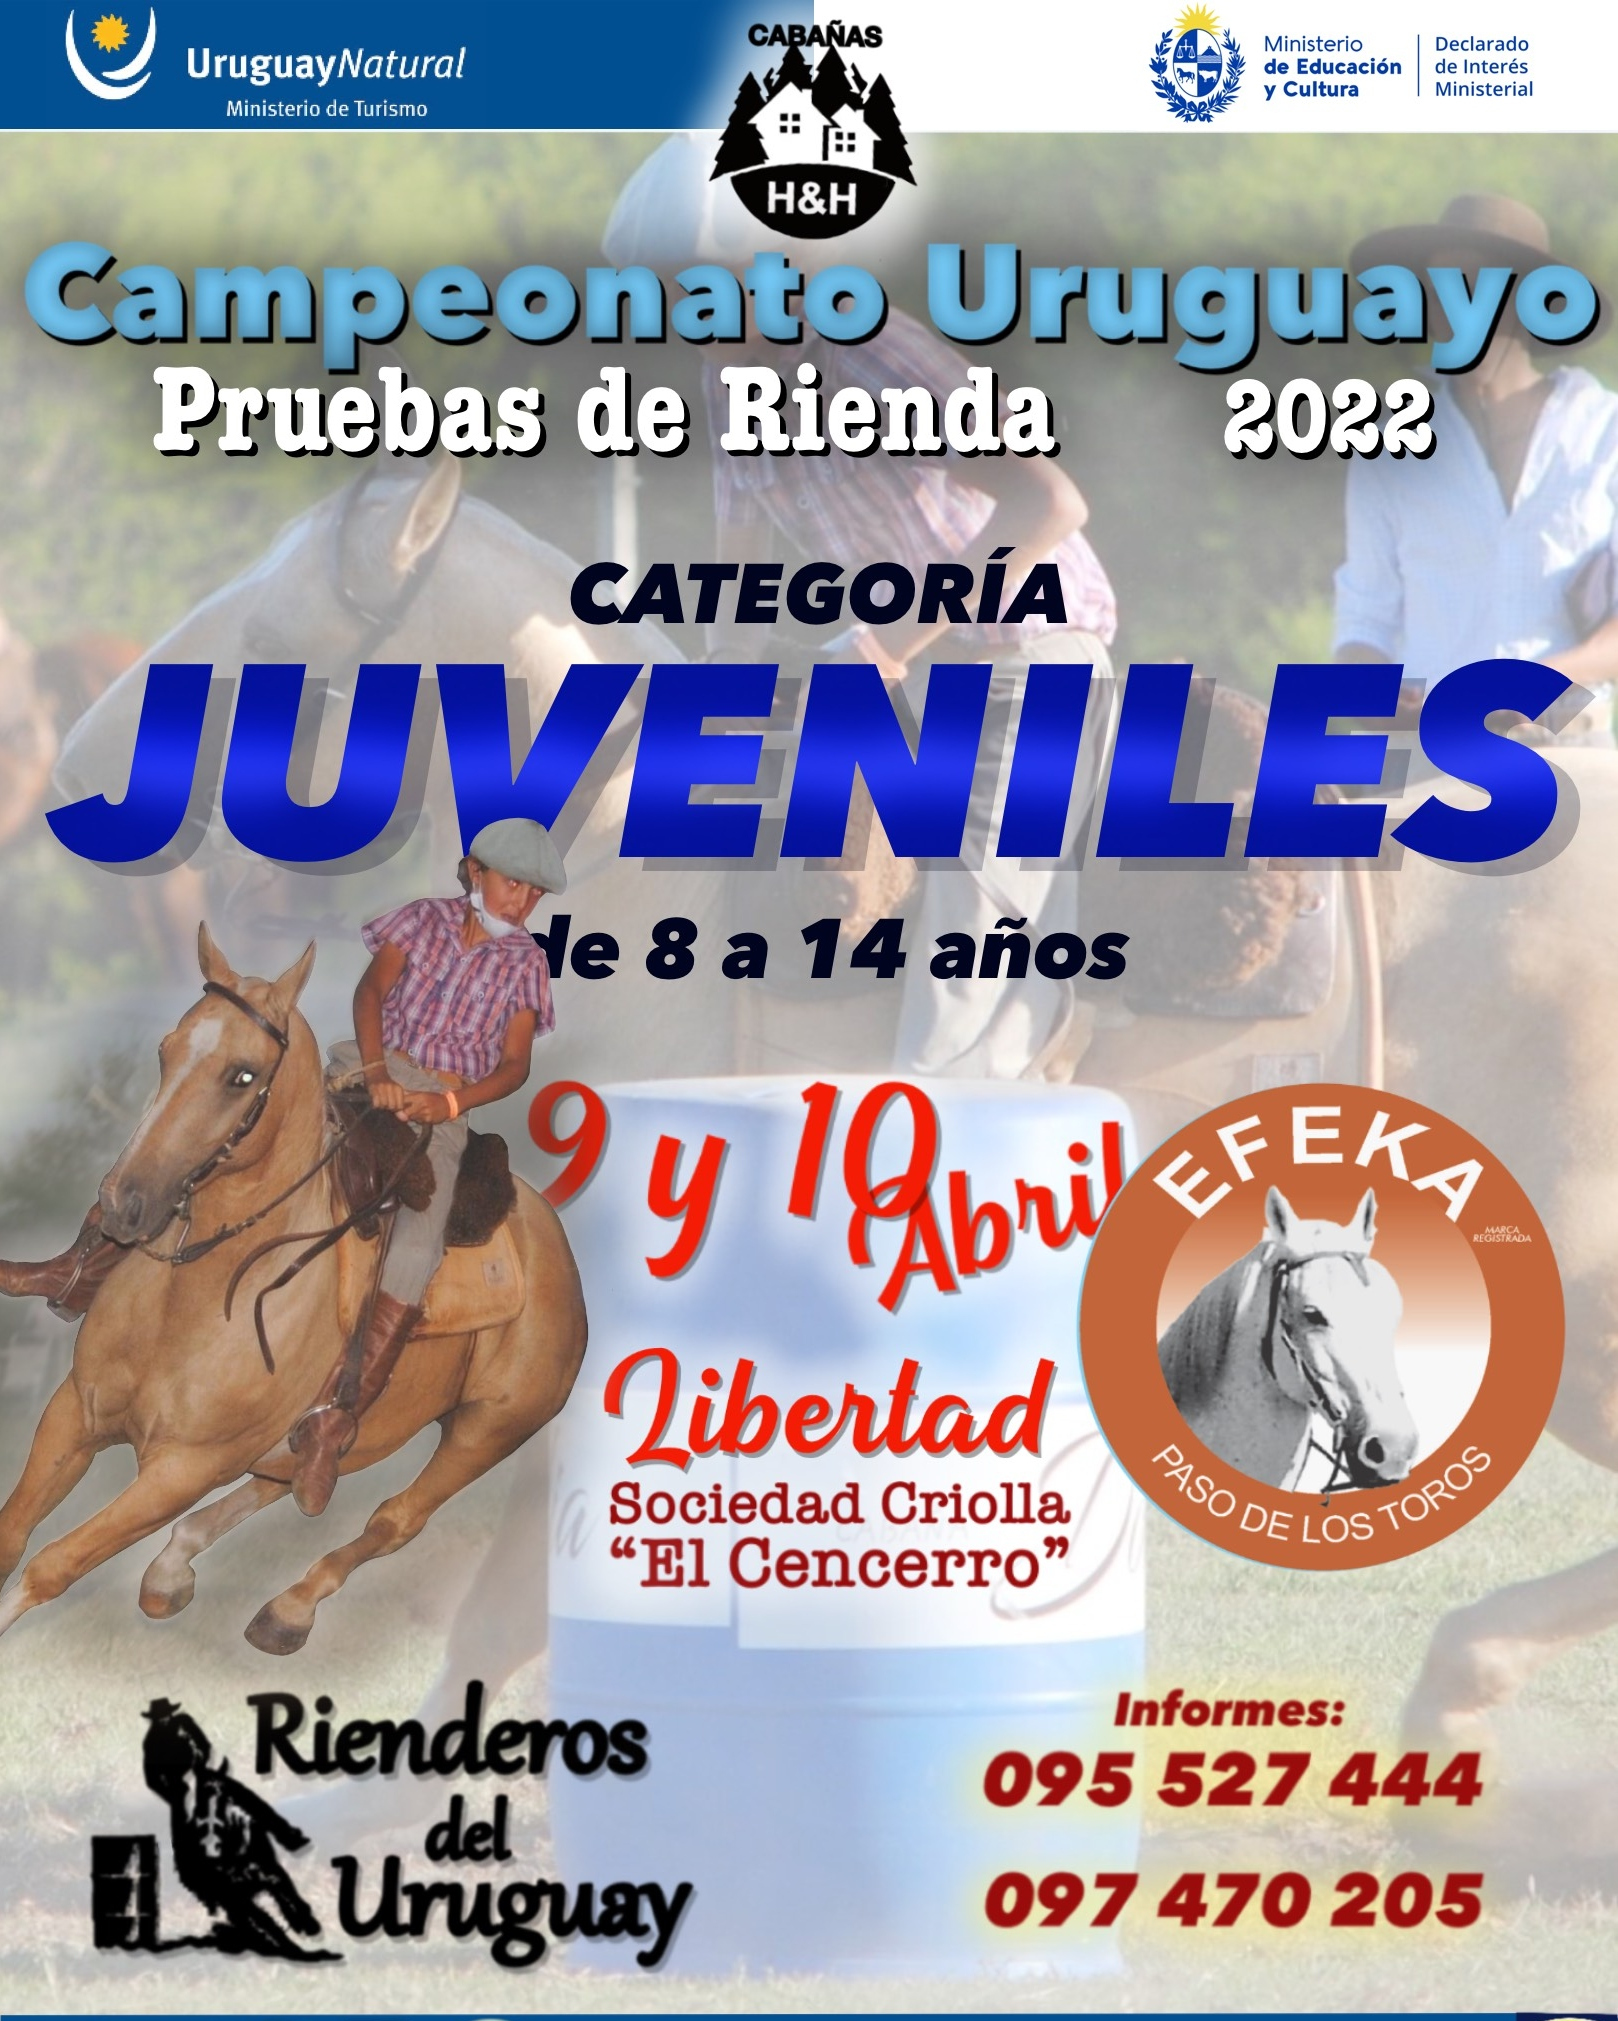 Campeonato Uruguayo de Pruebas de Rienda Juveniles